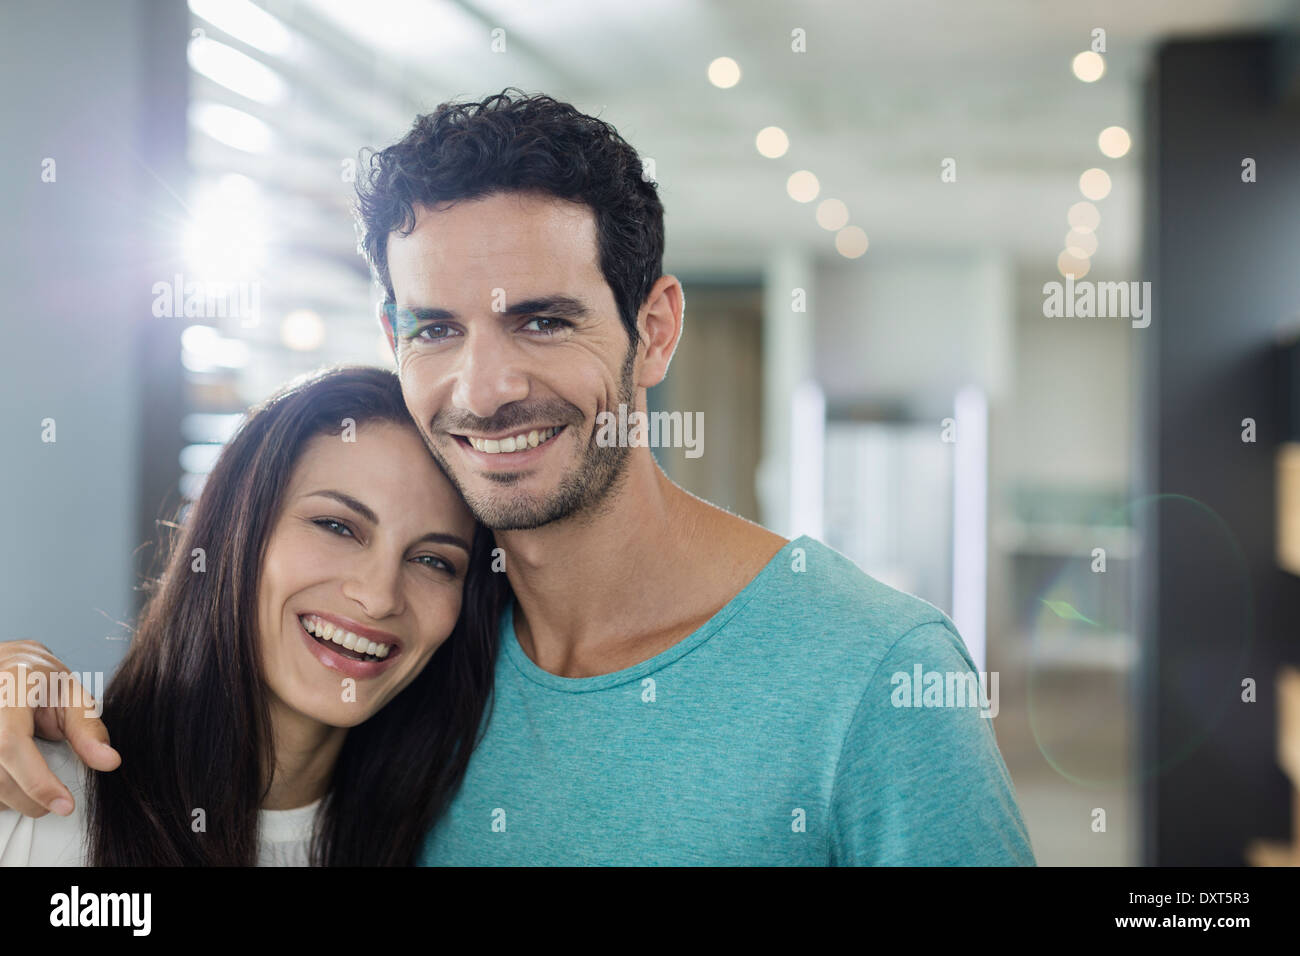 Portrait of happy couple Stock Photo